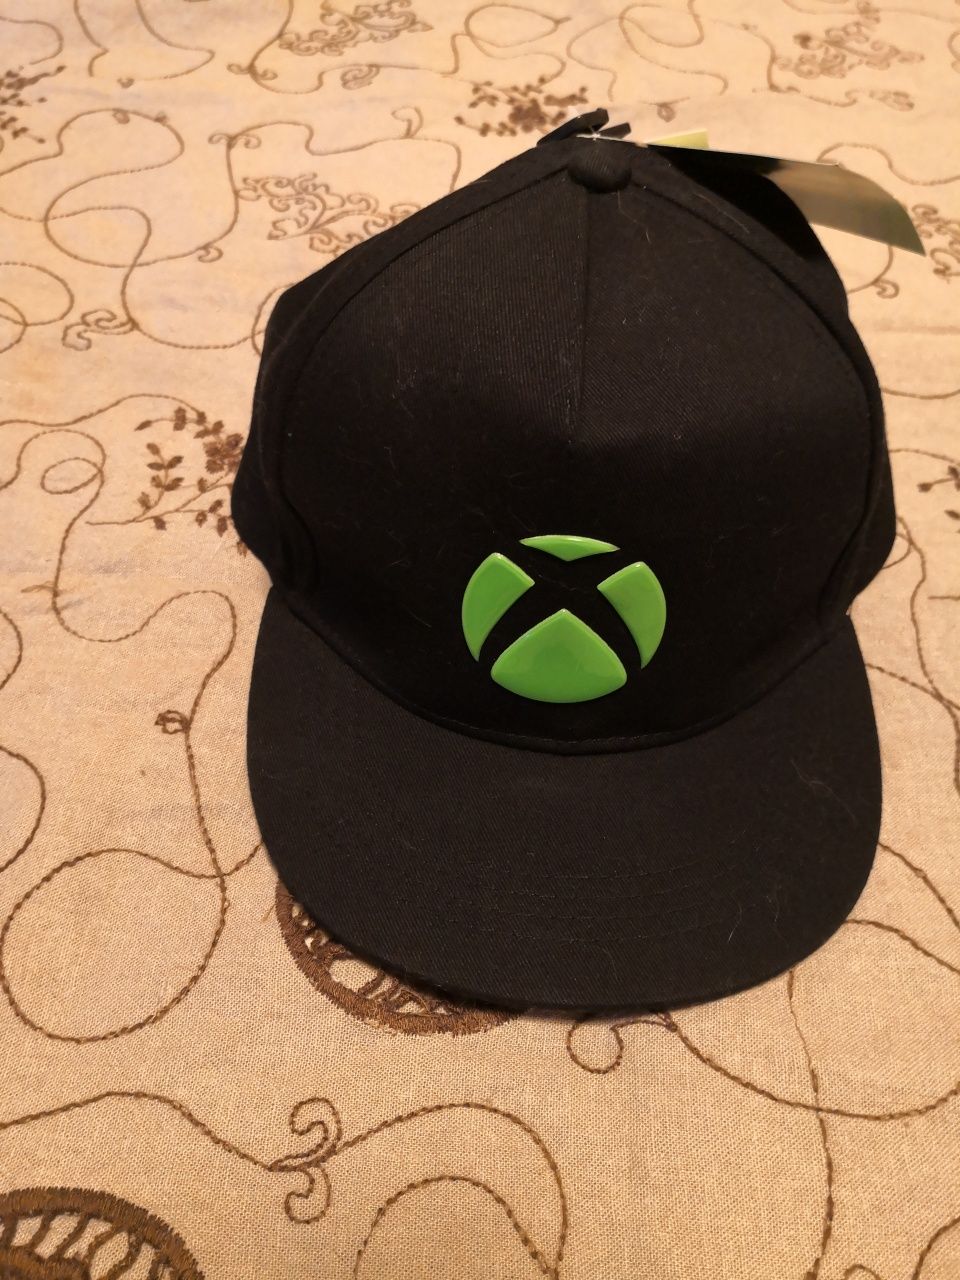 Xbox шапка, официален мърч чисто нова